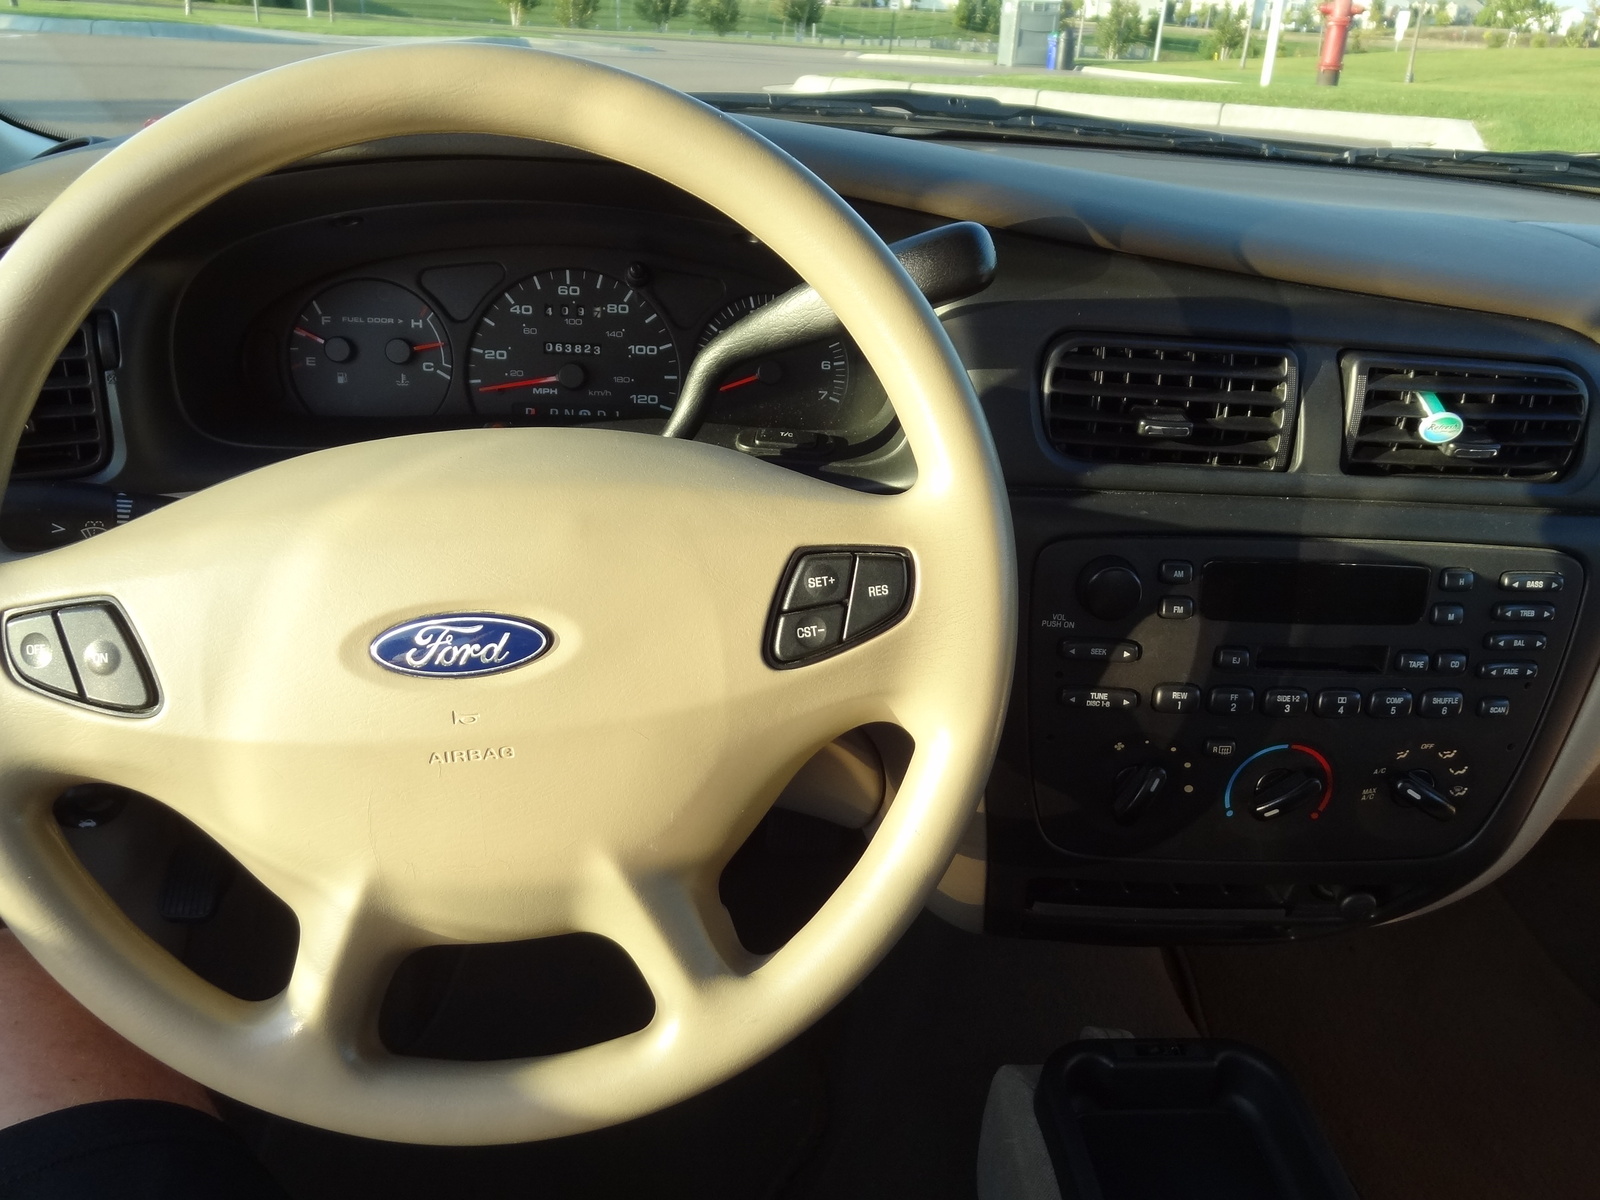 2000 Ford taurus interior photos #4